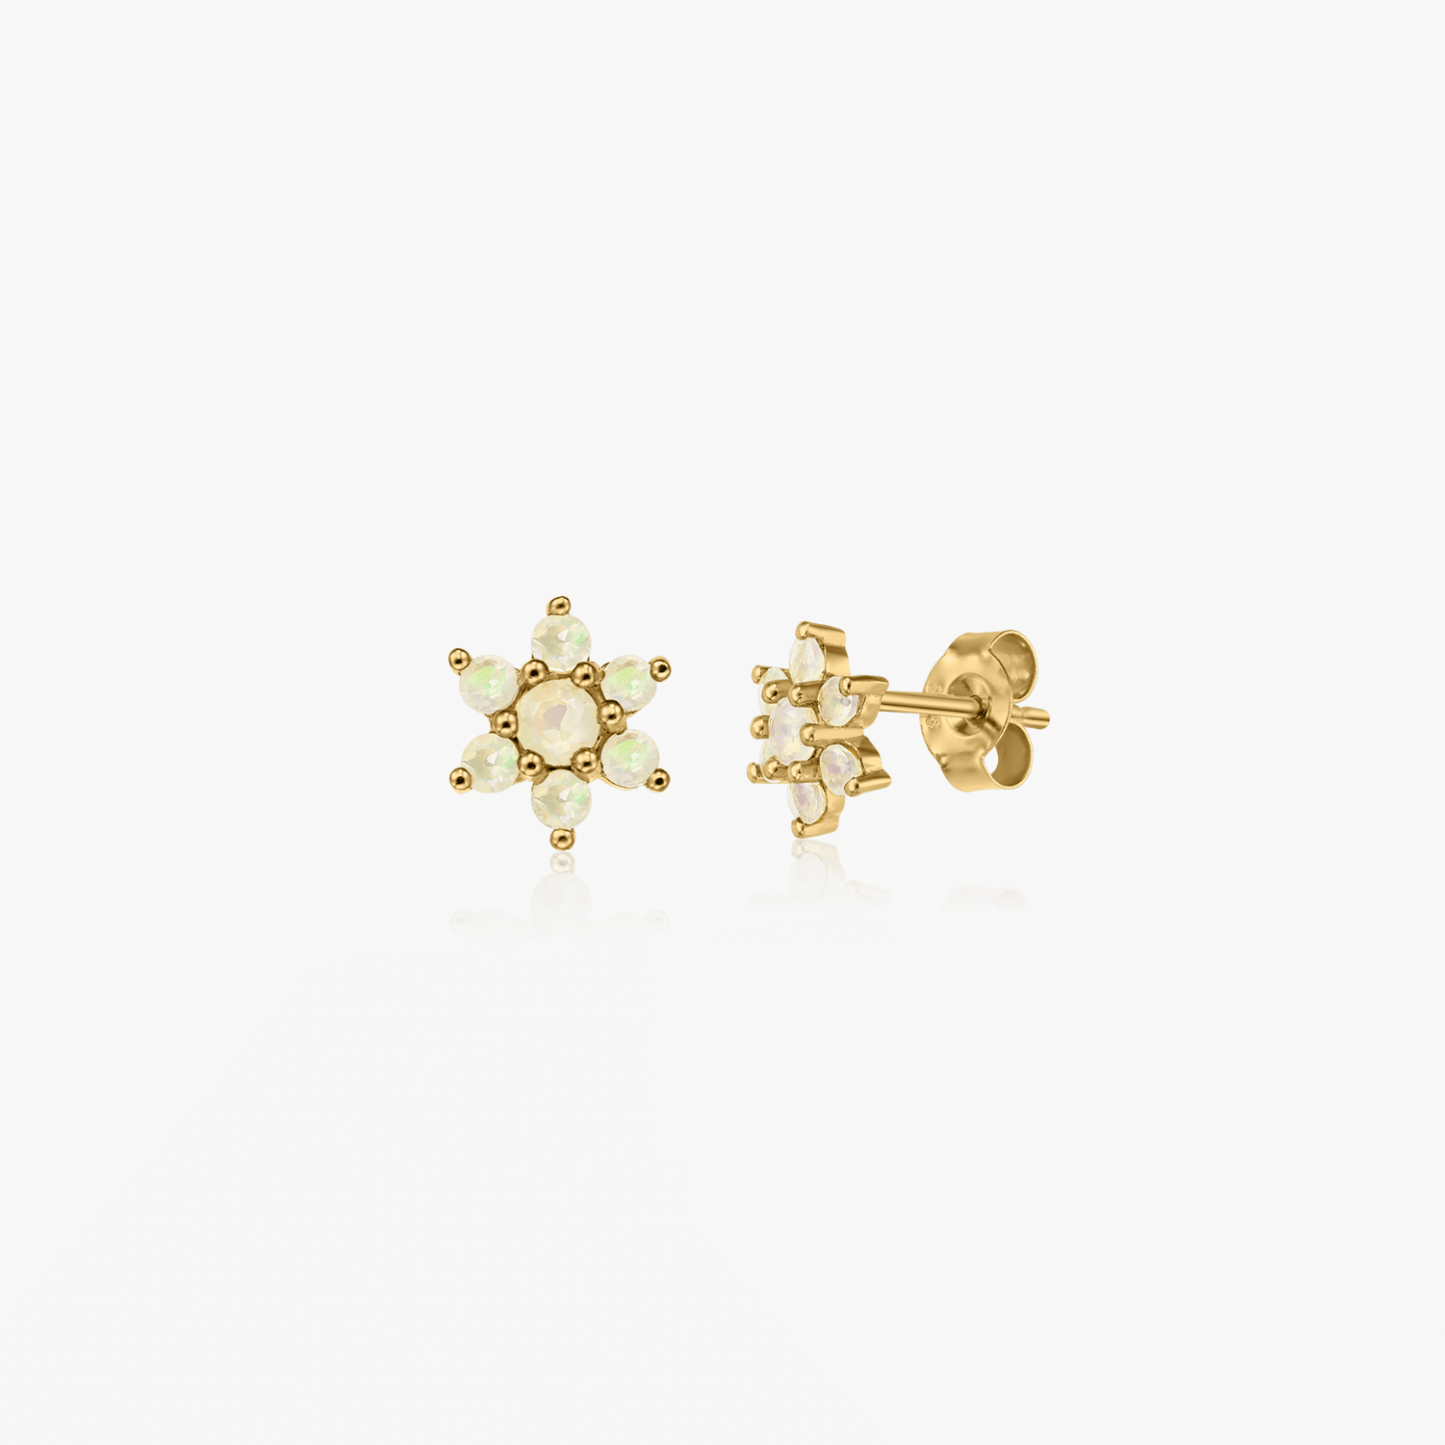 Golden Dahlia silver earrings - Opal